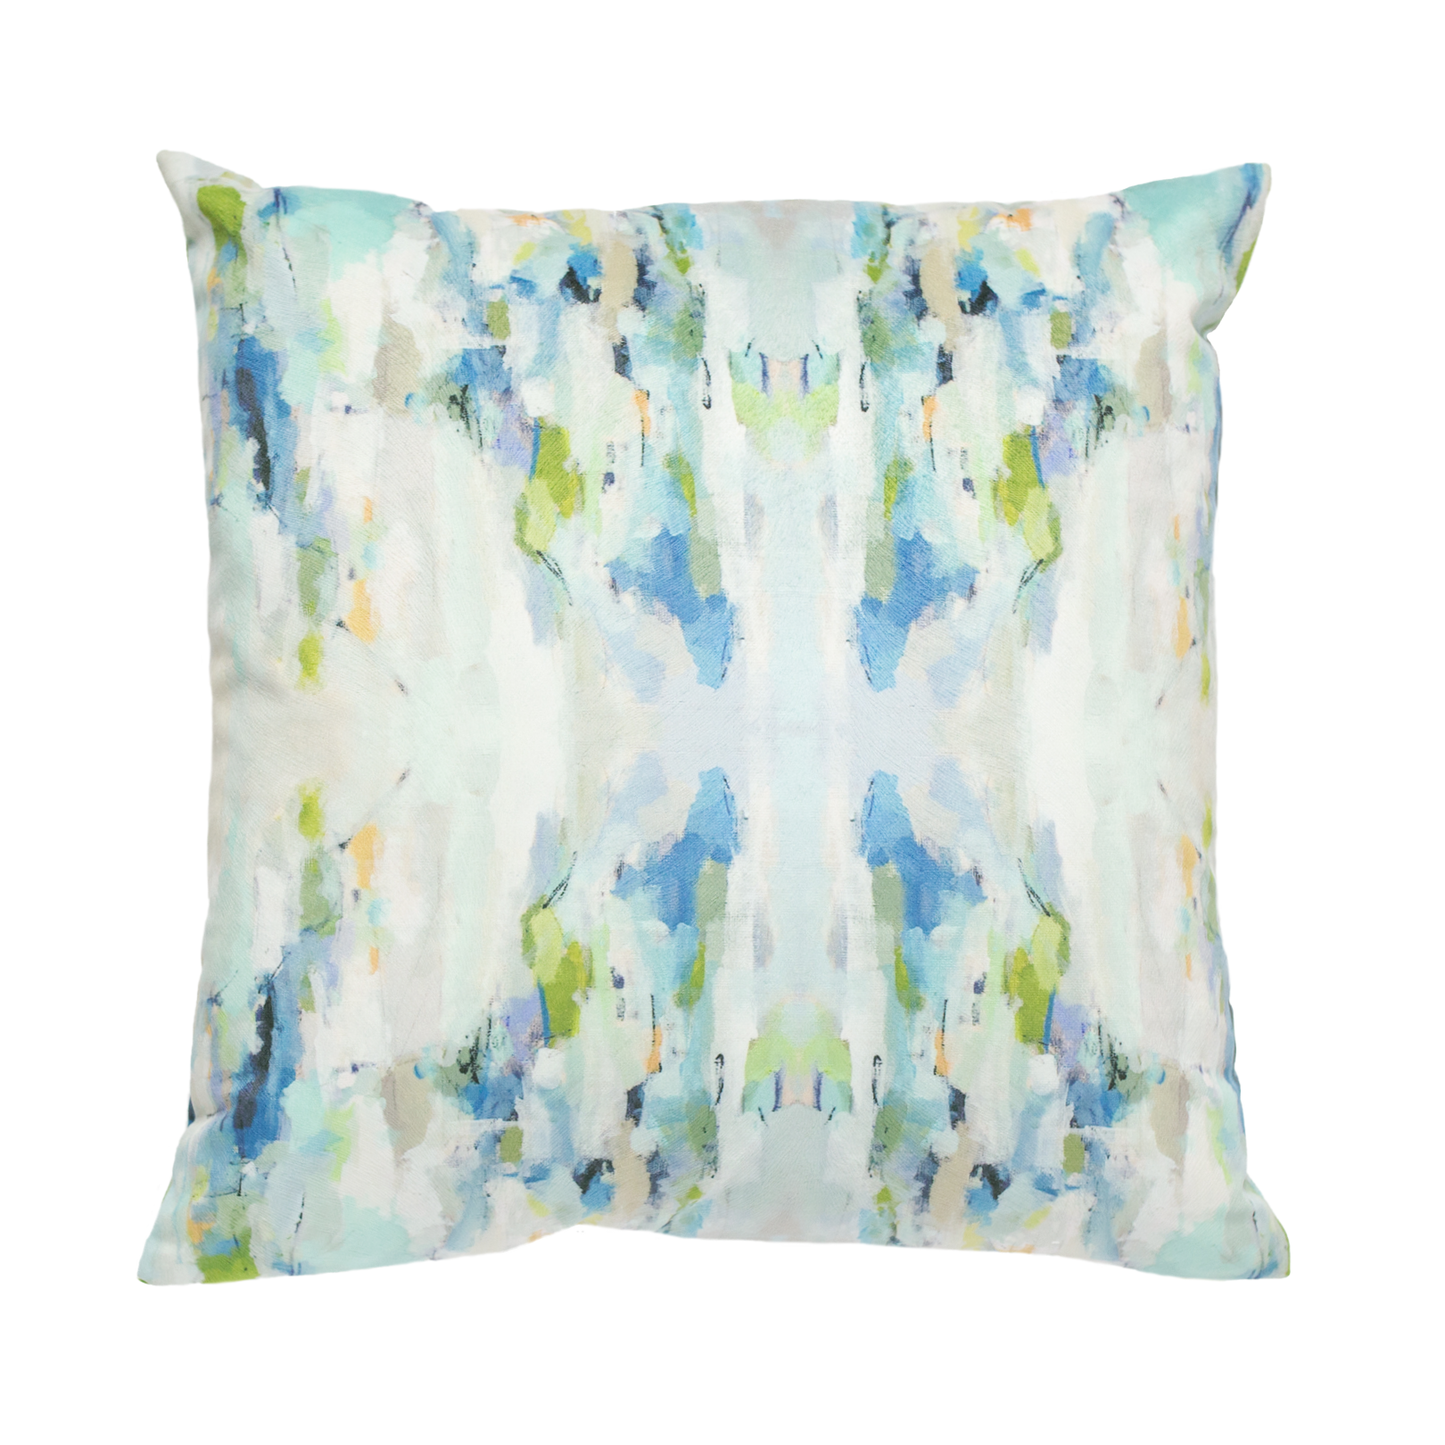 Laura Park Designs - Wintergreen 22x22 Linen Cotton Pillow